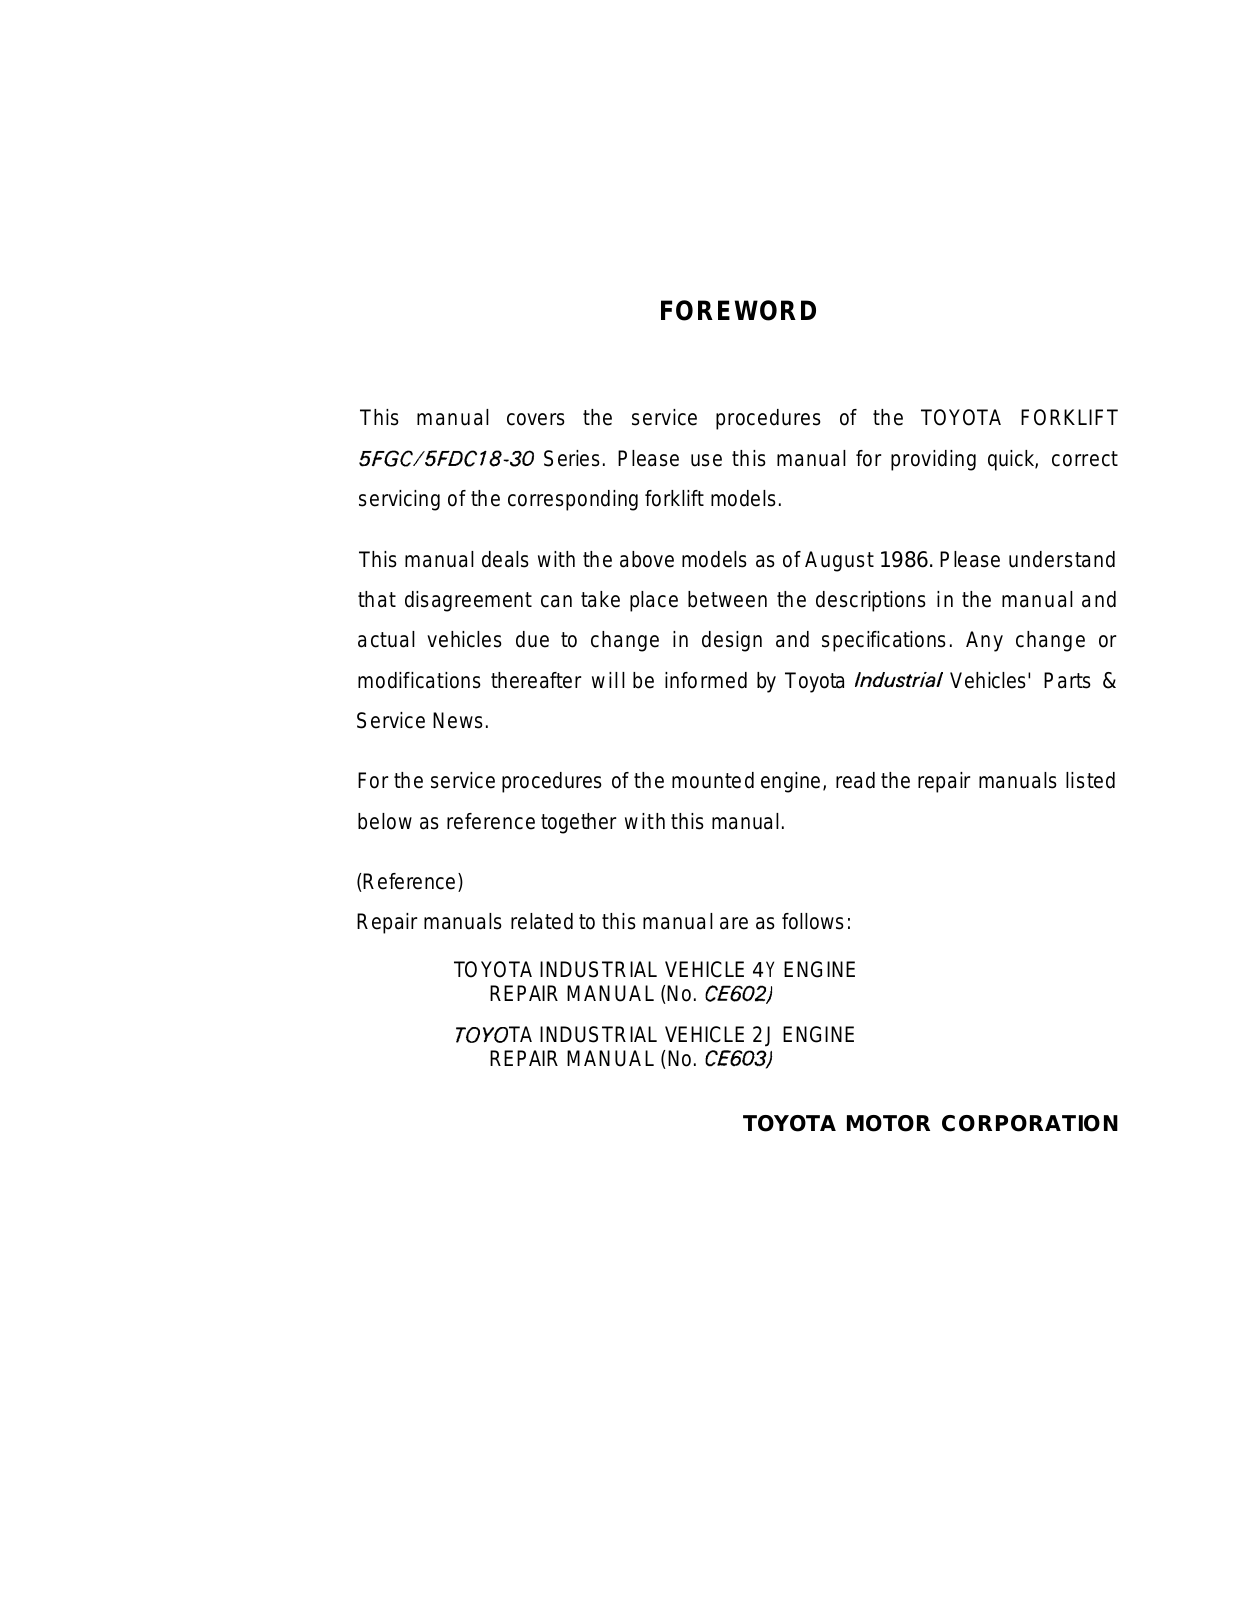 Toyota 5FGC, 5FDC18-30 Repair Manual